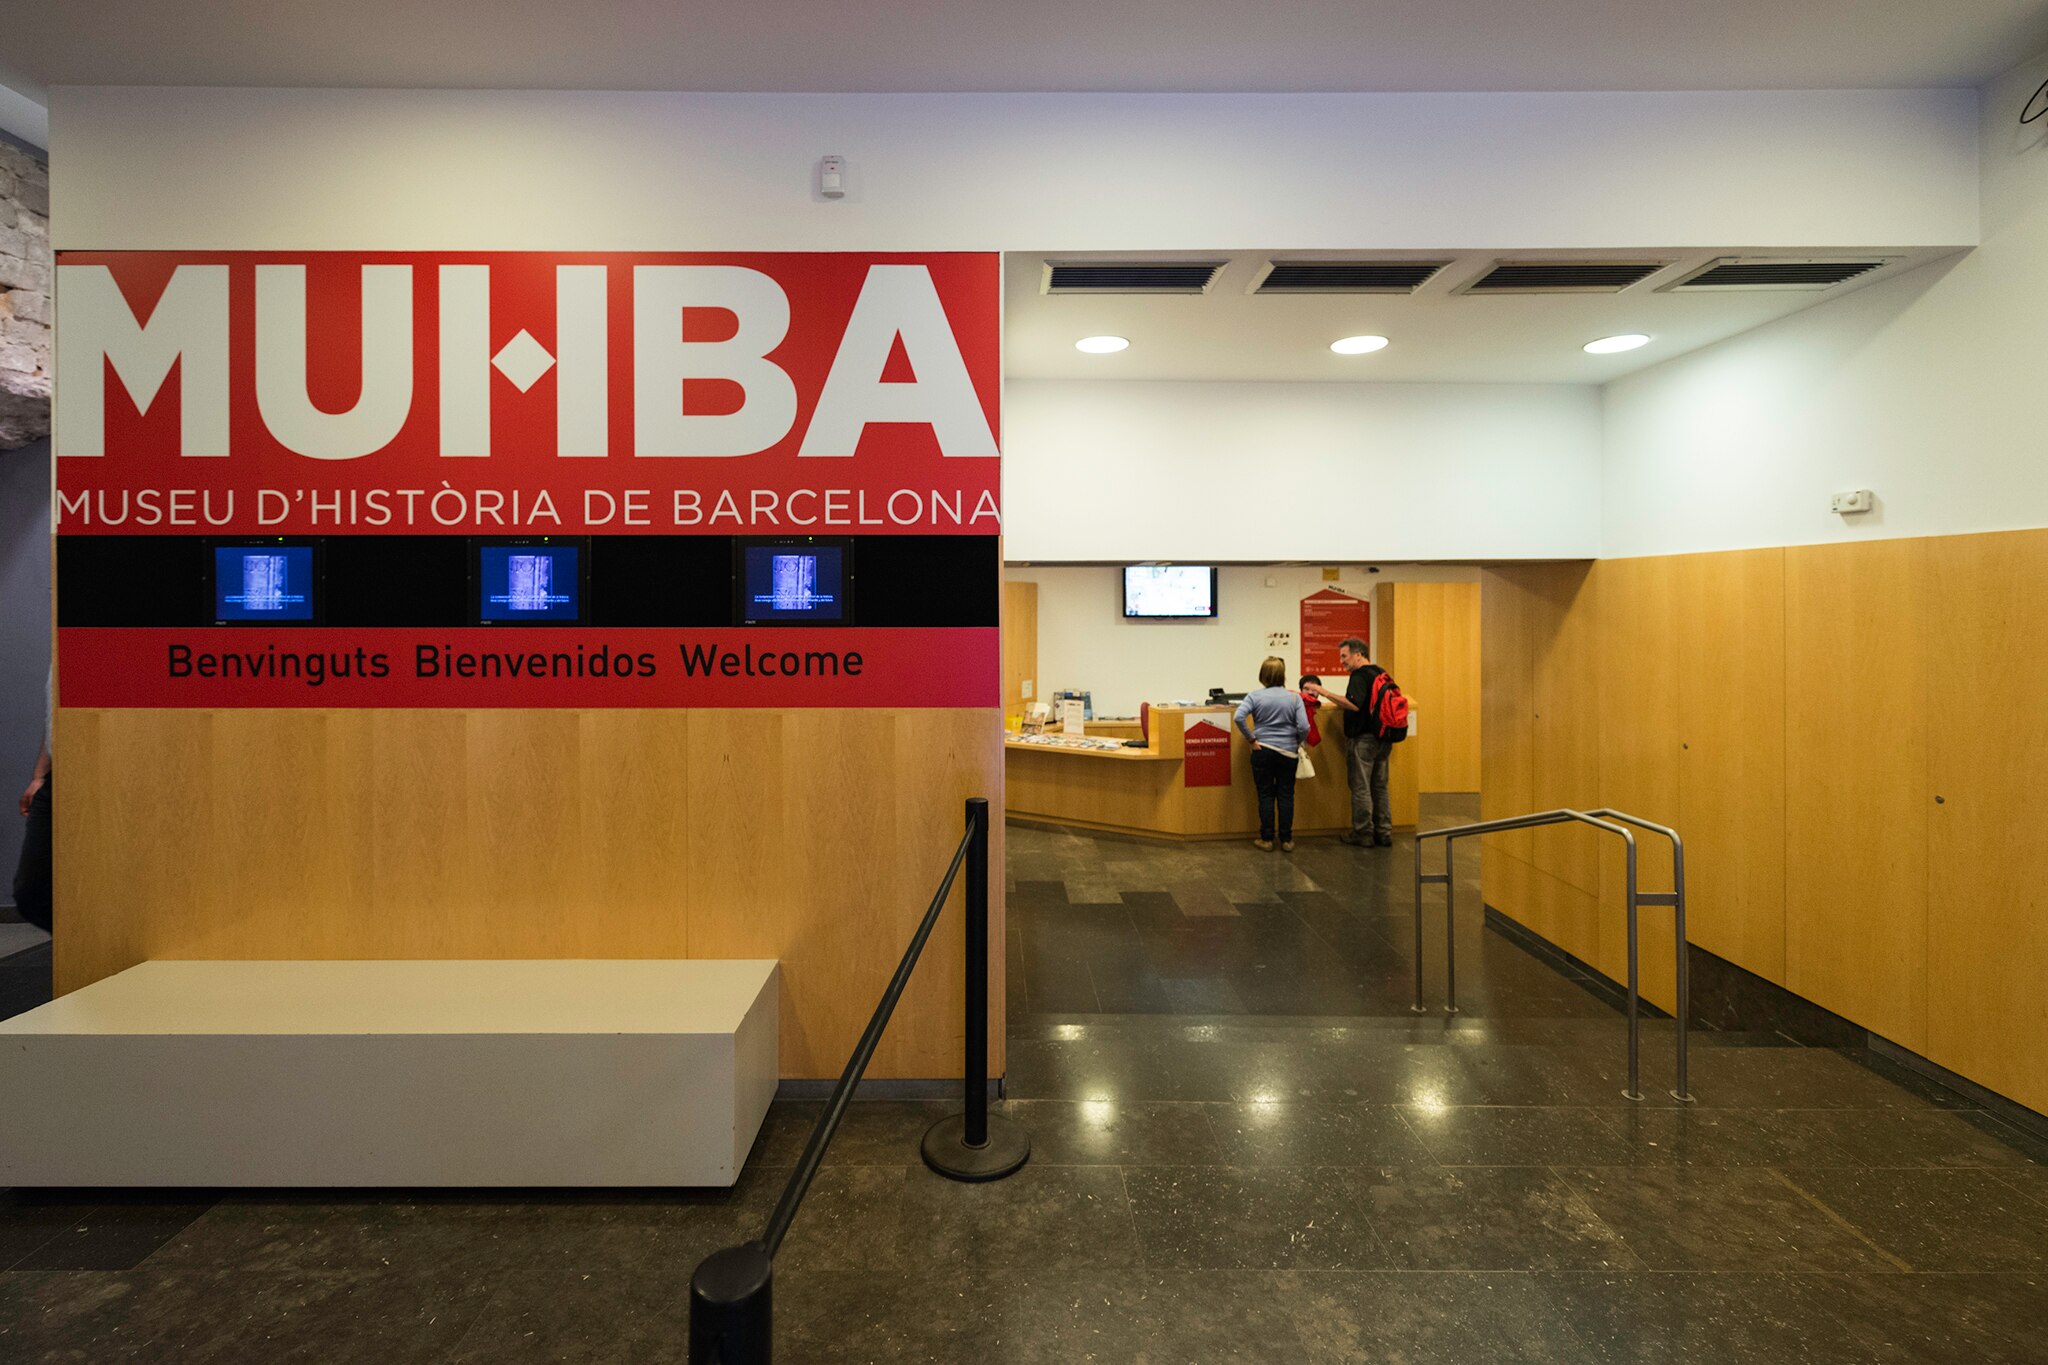 Museu d'Historia de Barcelona (MUHBA)